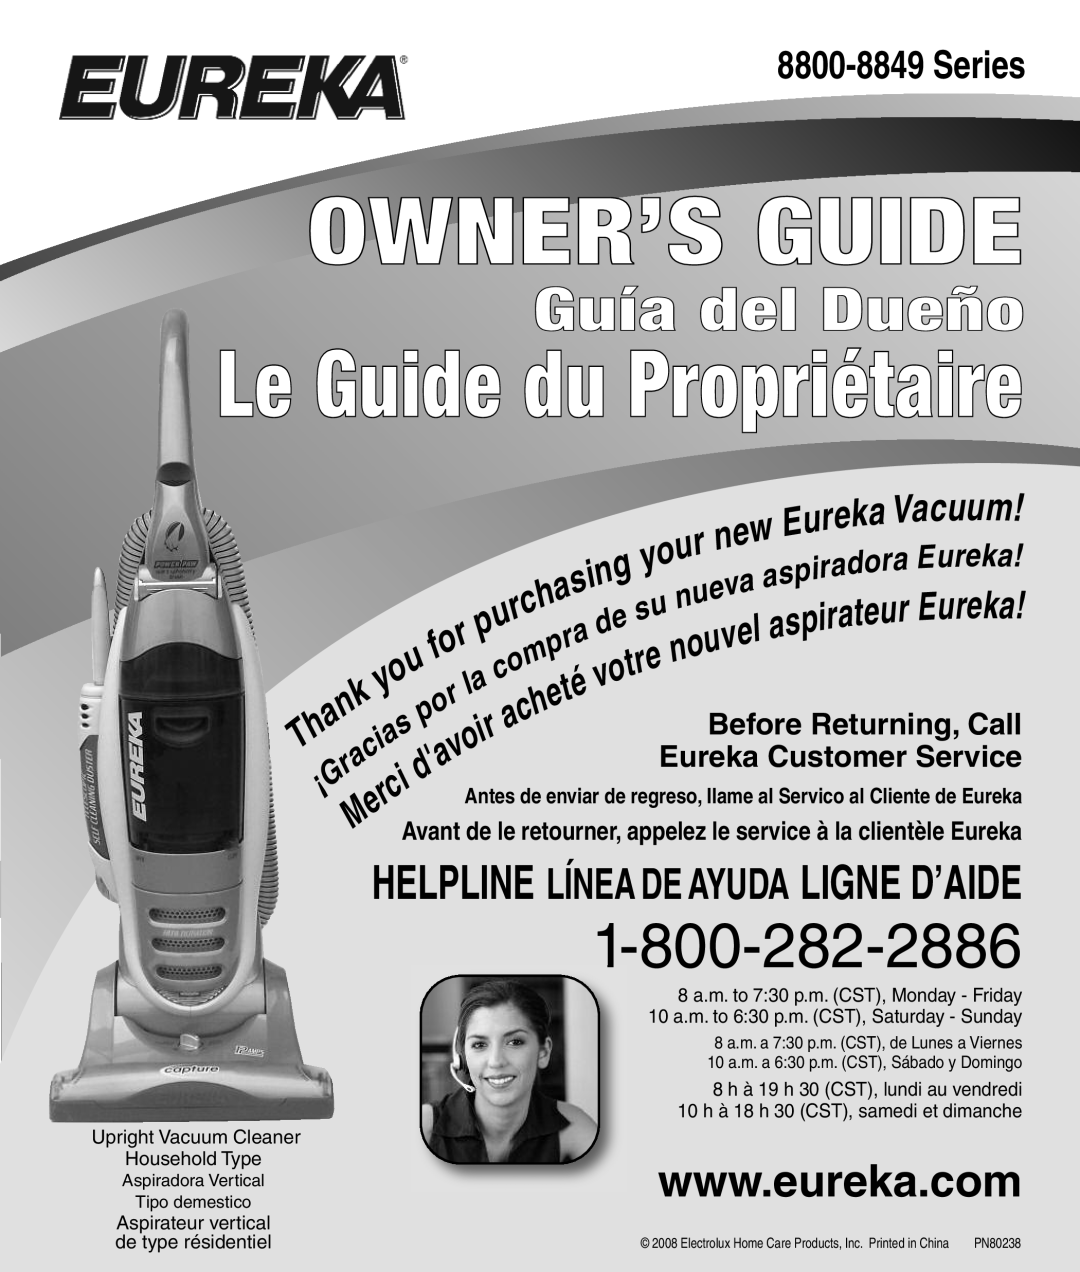 Eureka 8800-8849 Series manual Owner’S Guide, Le Guide du Propriétaire, Guía del Dueño 